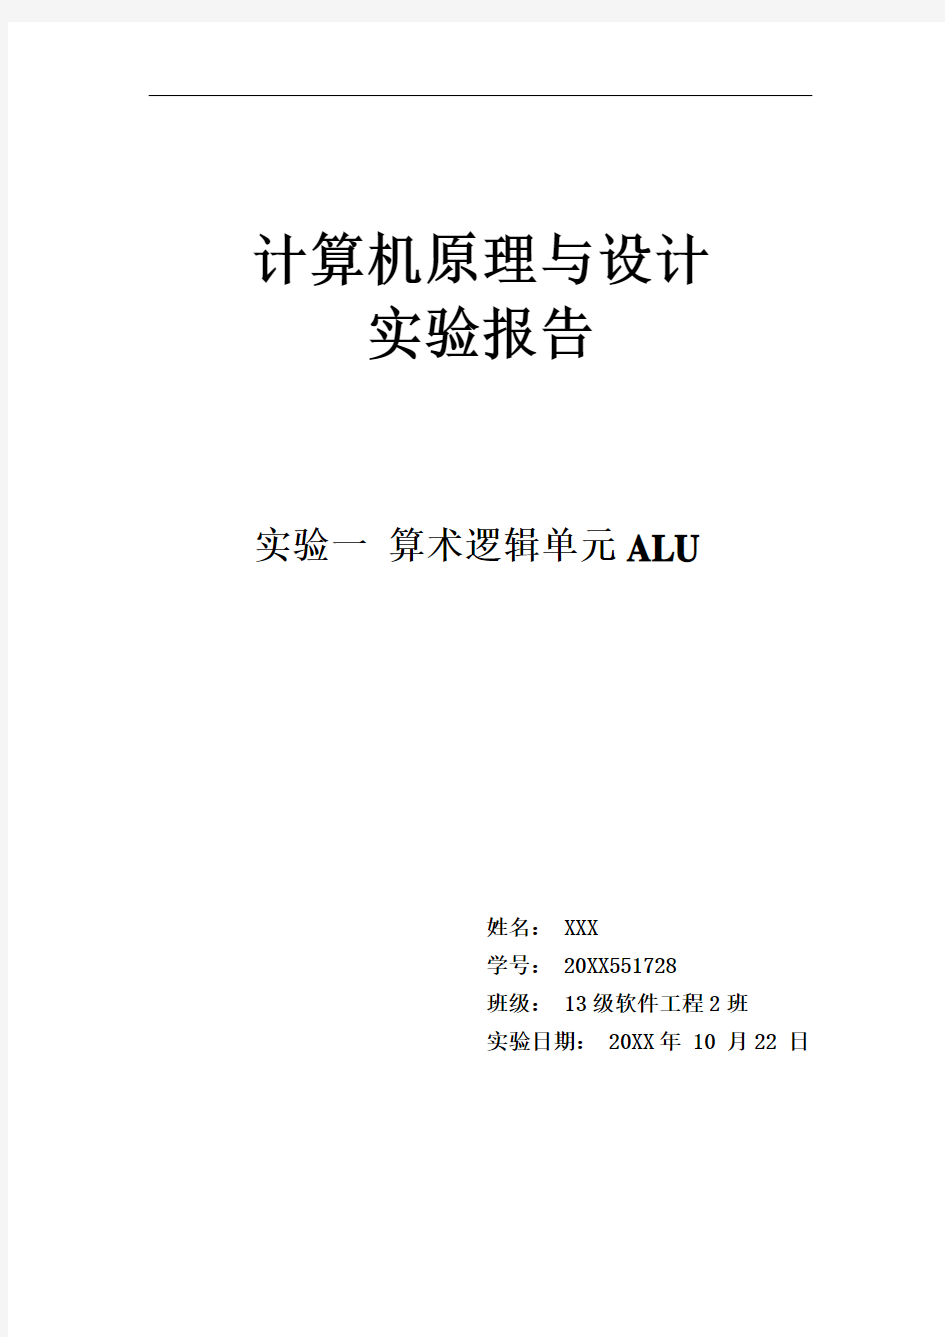 推荐-湘潭大学计算机原理 实验一 算术逻辑单元alu实验